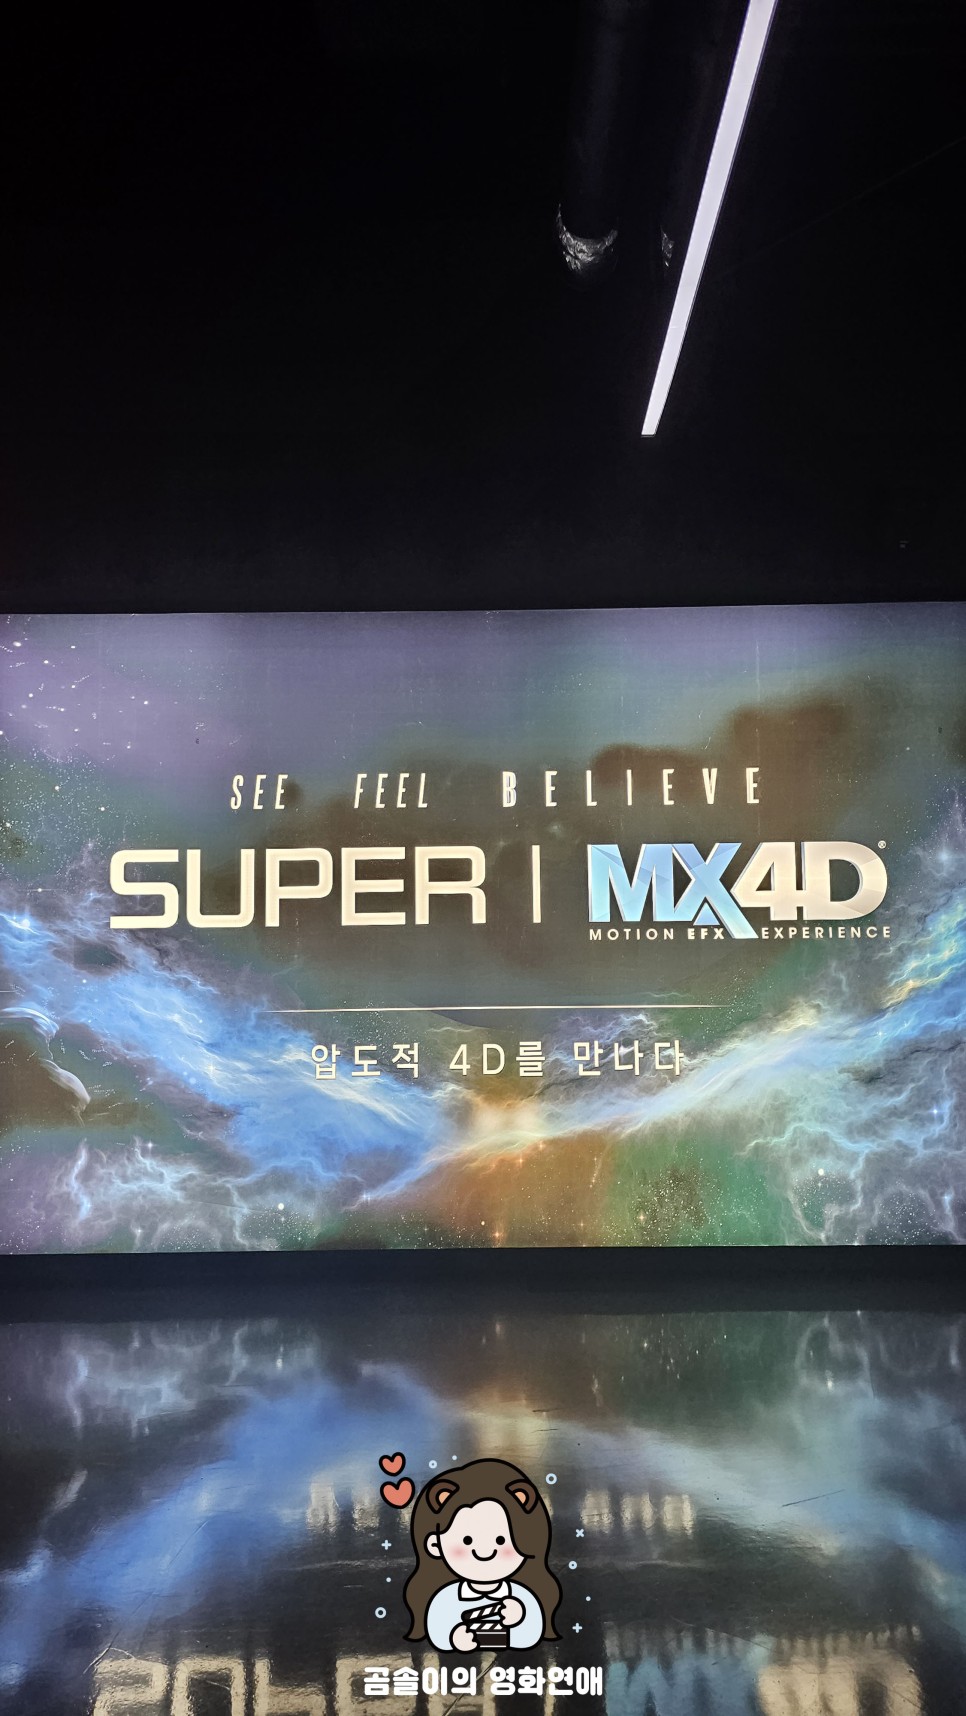 롯데시네마 월드타워관 SUPER l MX4D 상영관 수퍼 MX4D 후기